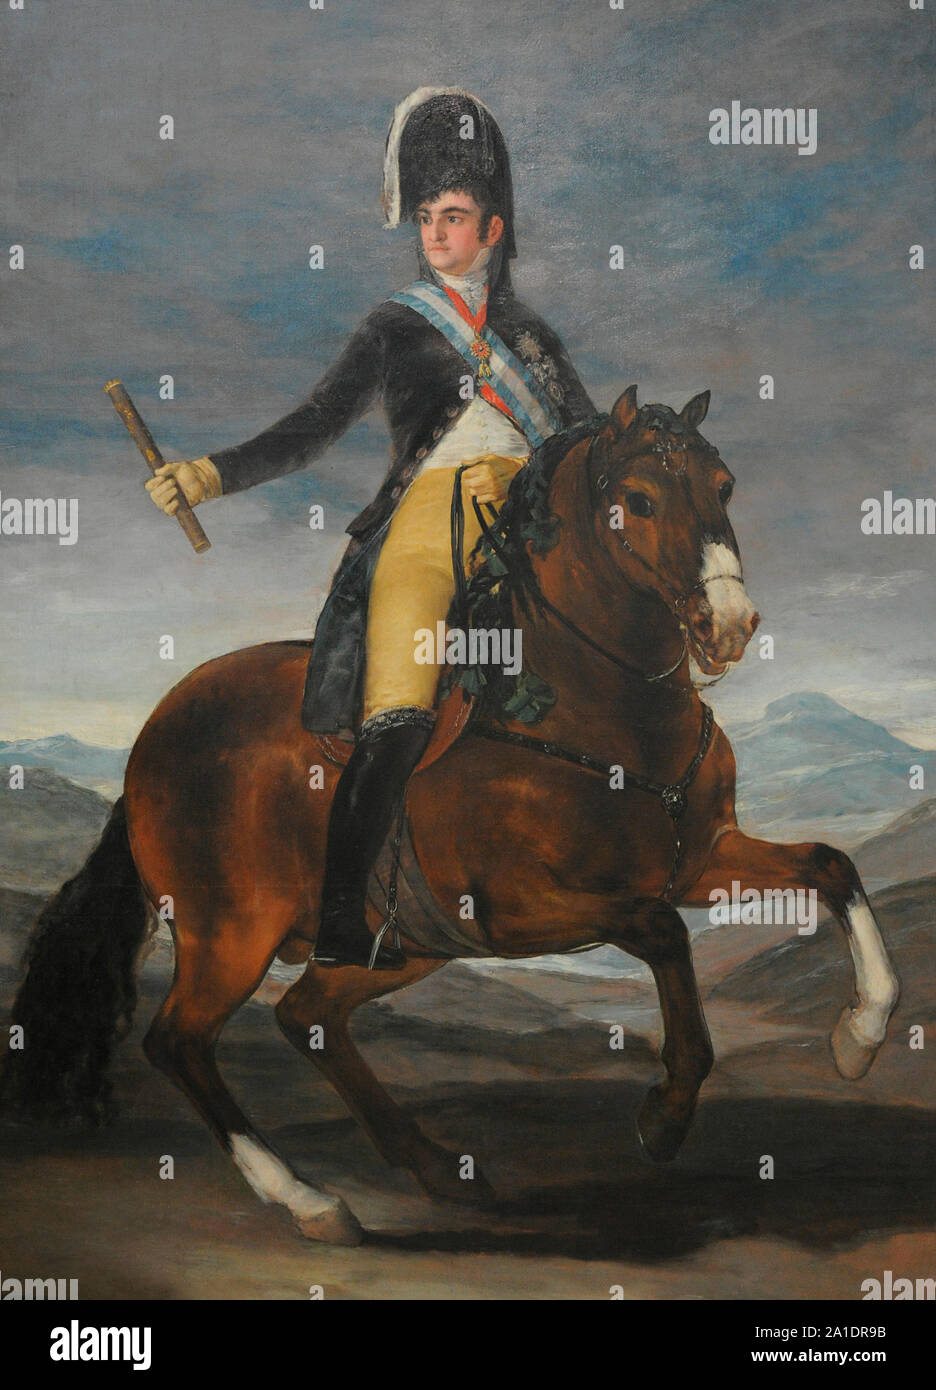 Ferdinand VII (1784-1833). Roi d'Espagne (1808-1833). Portrait équestre de Ferdinand VII, 1808. Par Francisco de Goya y Lucientes (1746-1828). San Fernando Académie Royale des Beaux-arts de Madrid. L'Espagne. Banque D'Images